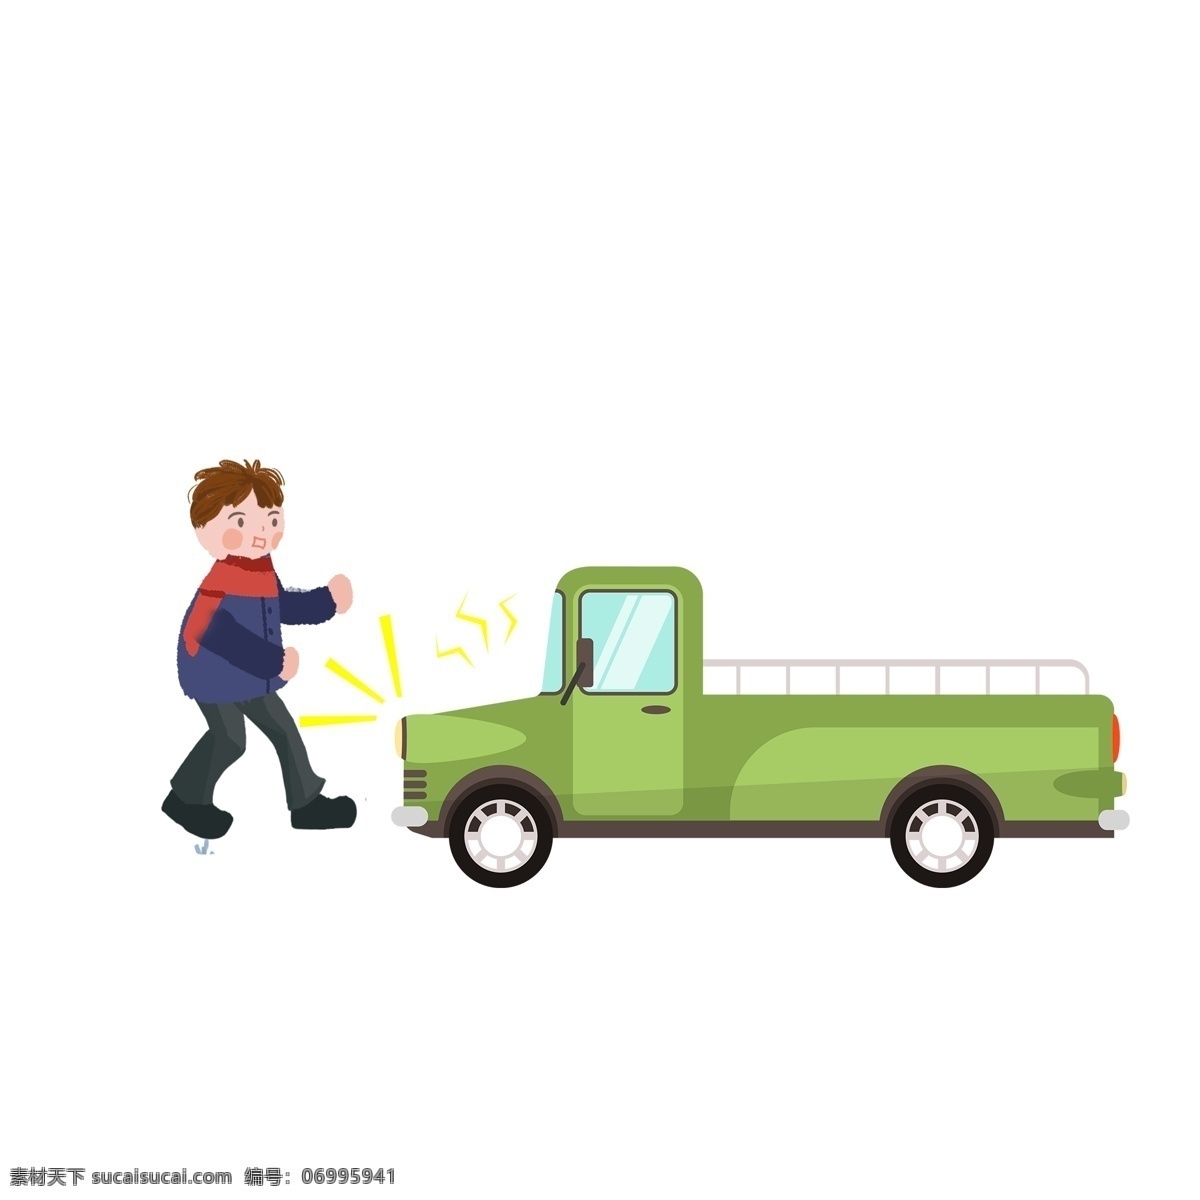 卡通 交通事故 场景 元素 插画 男孩 车子 货车 场景设计 撞车